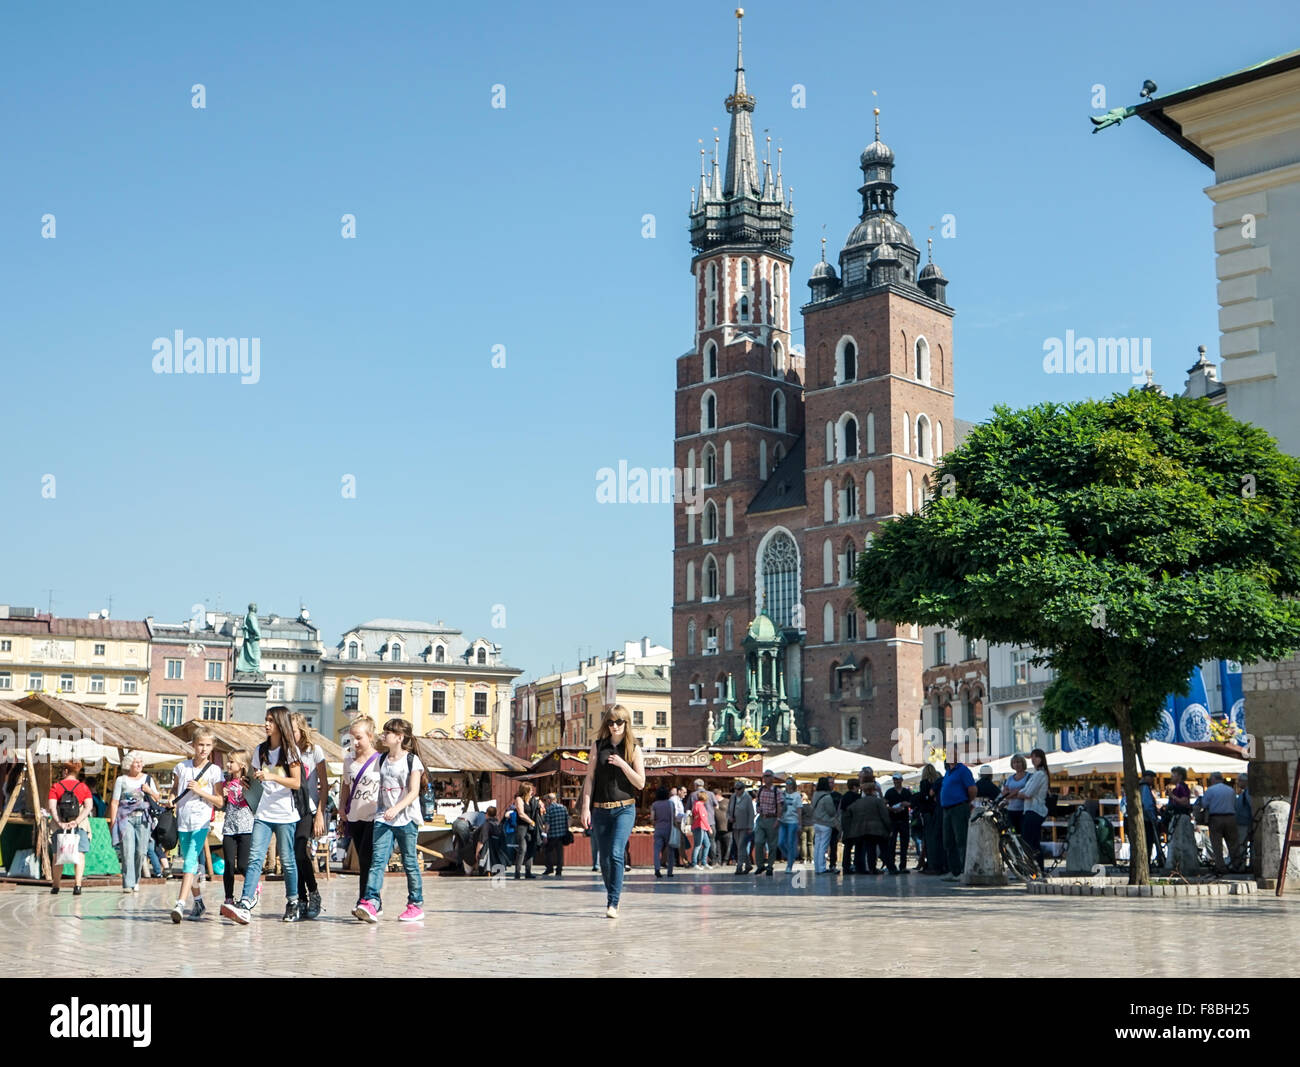 Main Market Square in Krakow Stock Photo